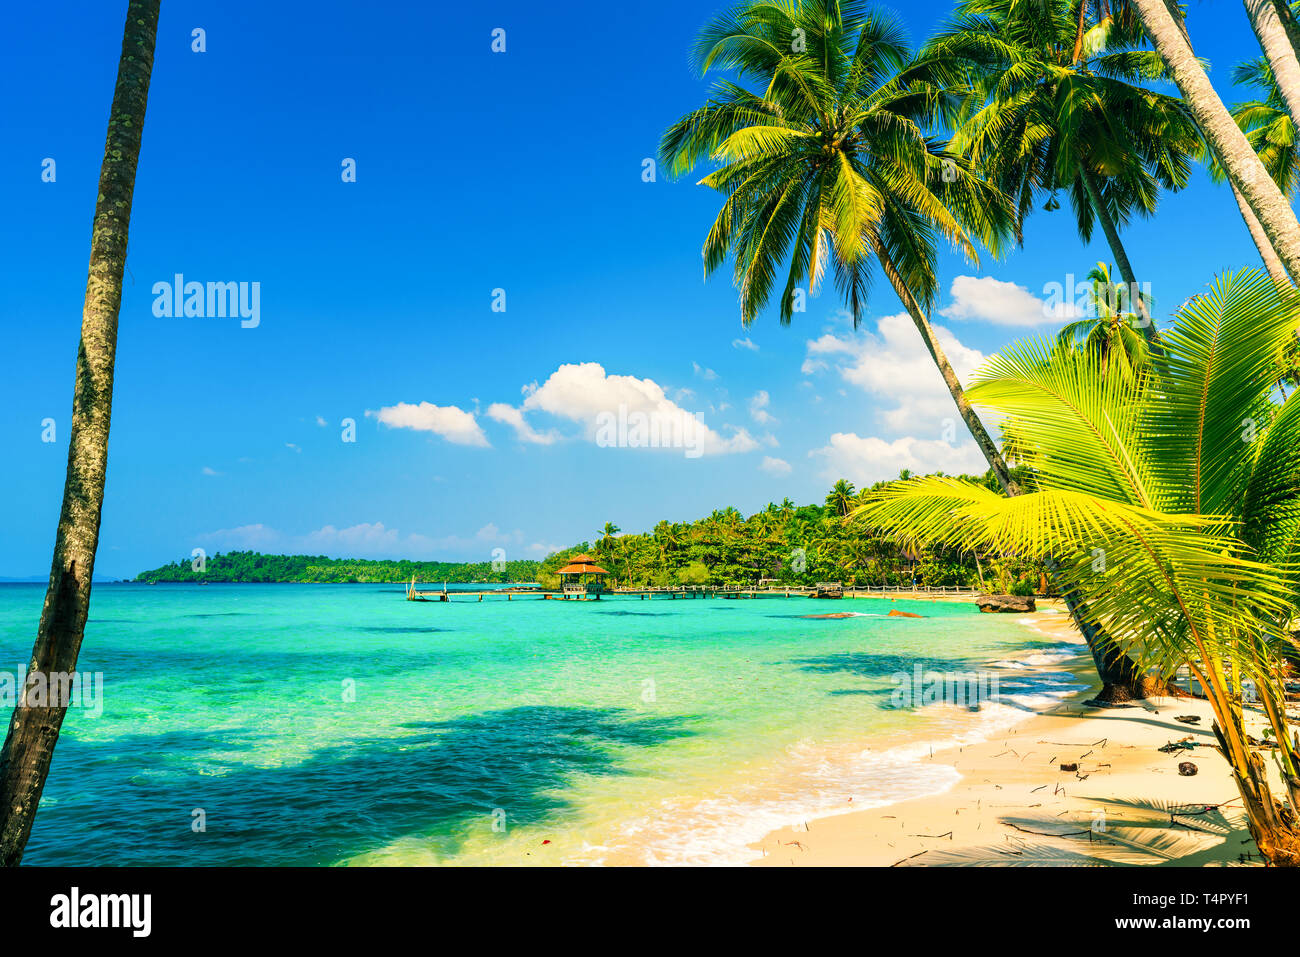 Playa Tropical con agua de mar cristalina, escenografía palmera al fondo impresionante laguna y cielo azul. Asia, Tailandia Foto de stock